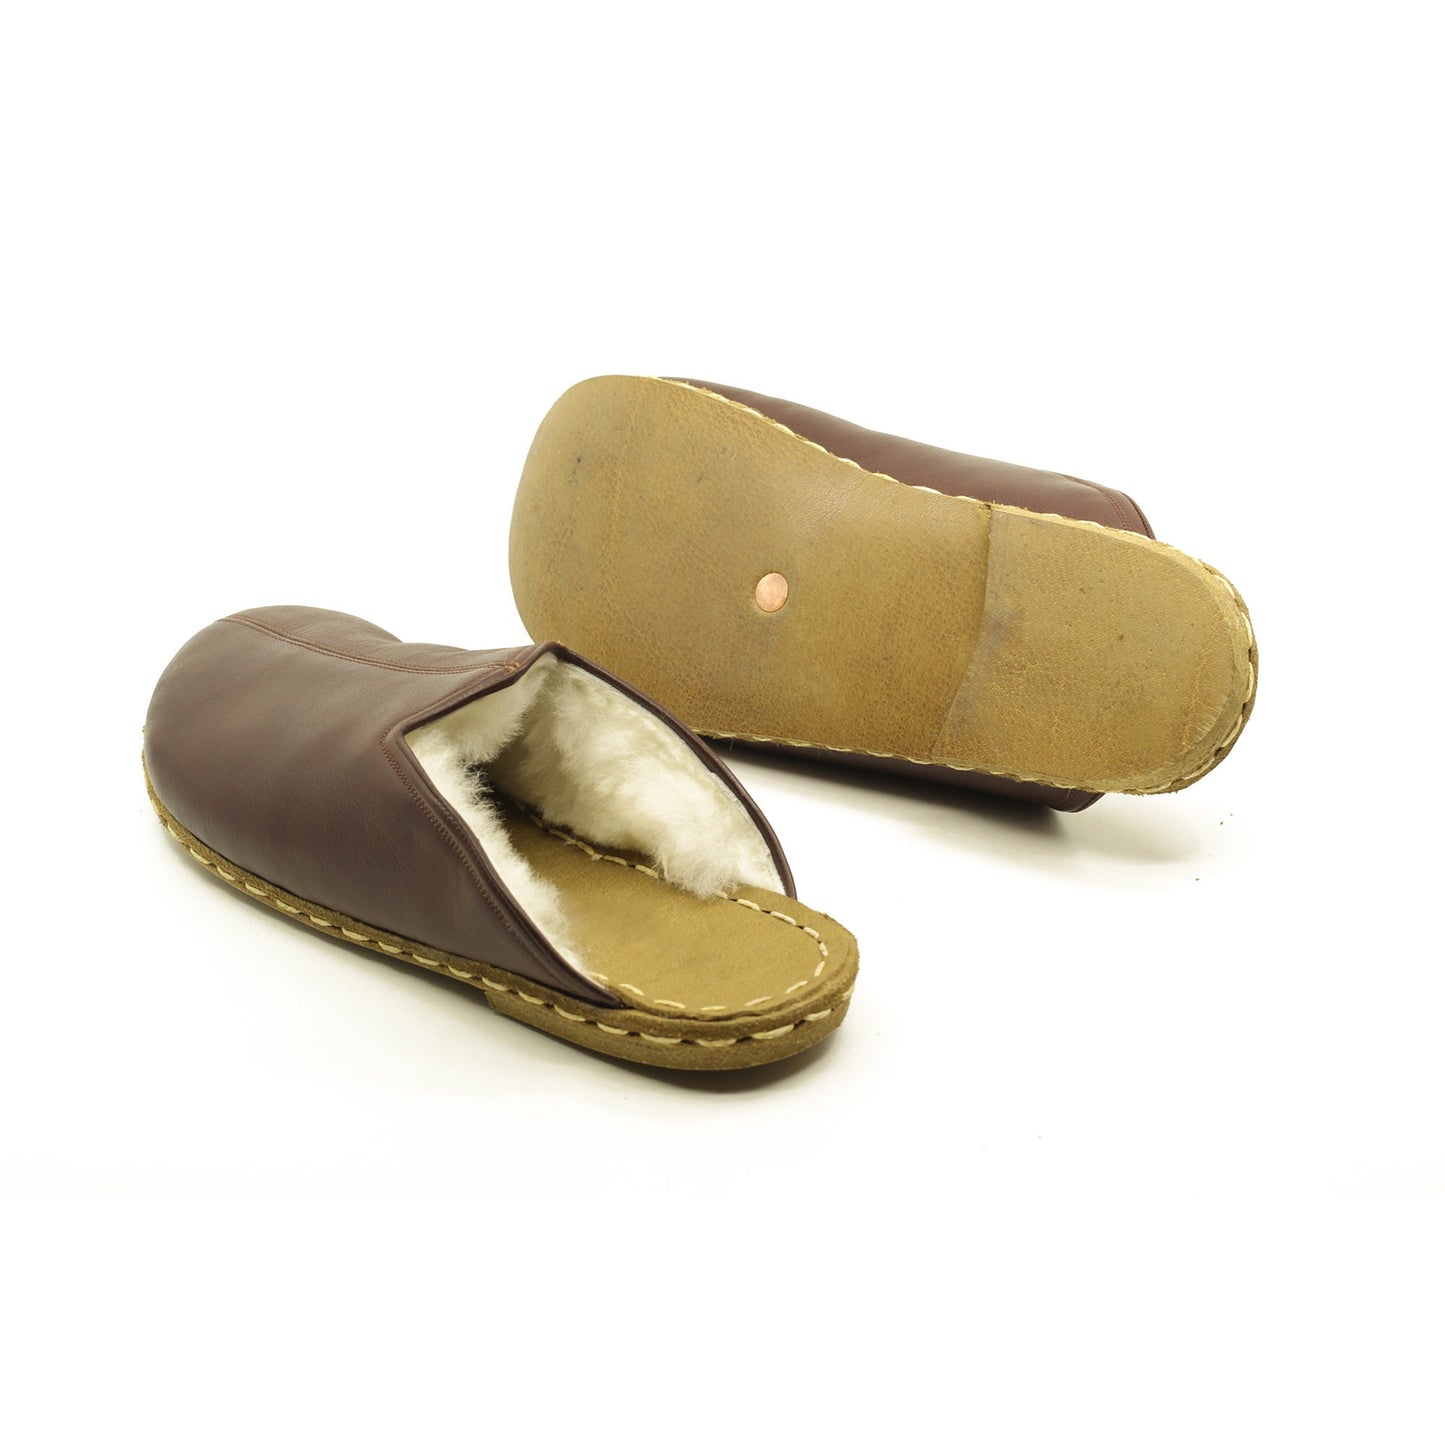 Sheepskin slippers - Winter Slippers - Barefoot Slipper - Close Toed Slippers - Bitter Brown Leather - Copper Rivet - For Women